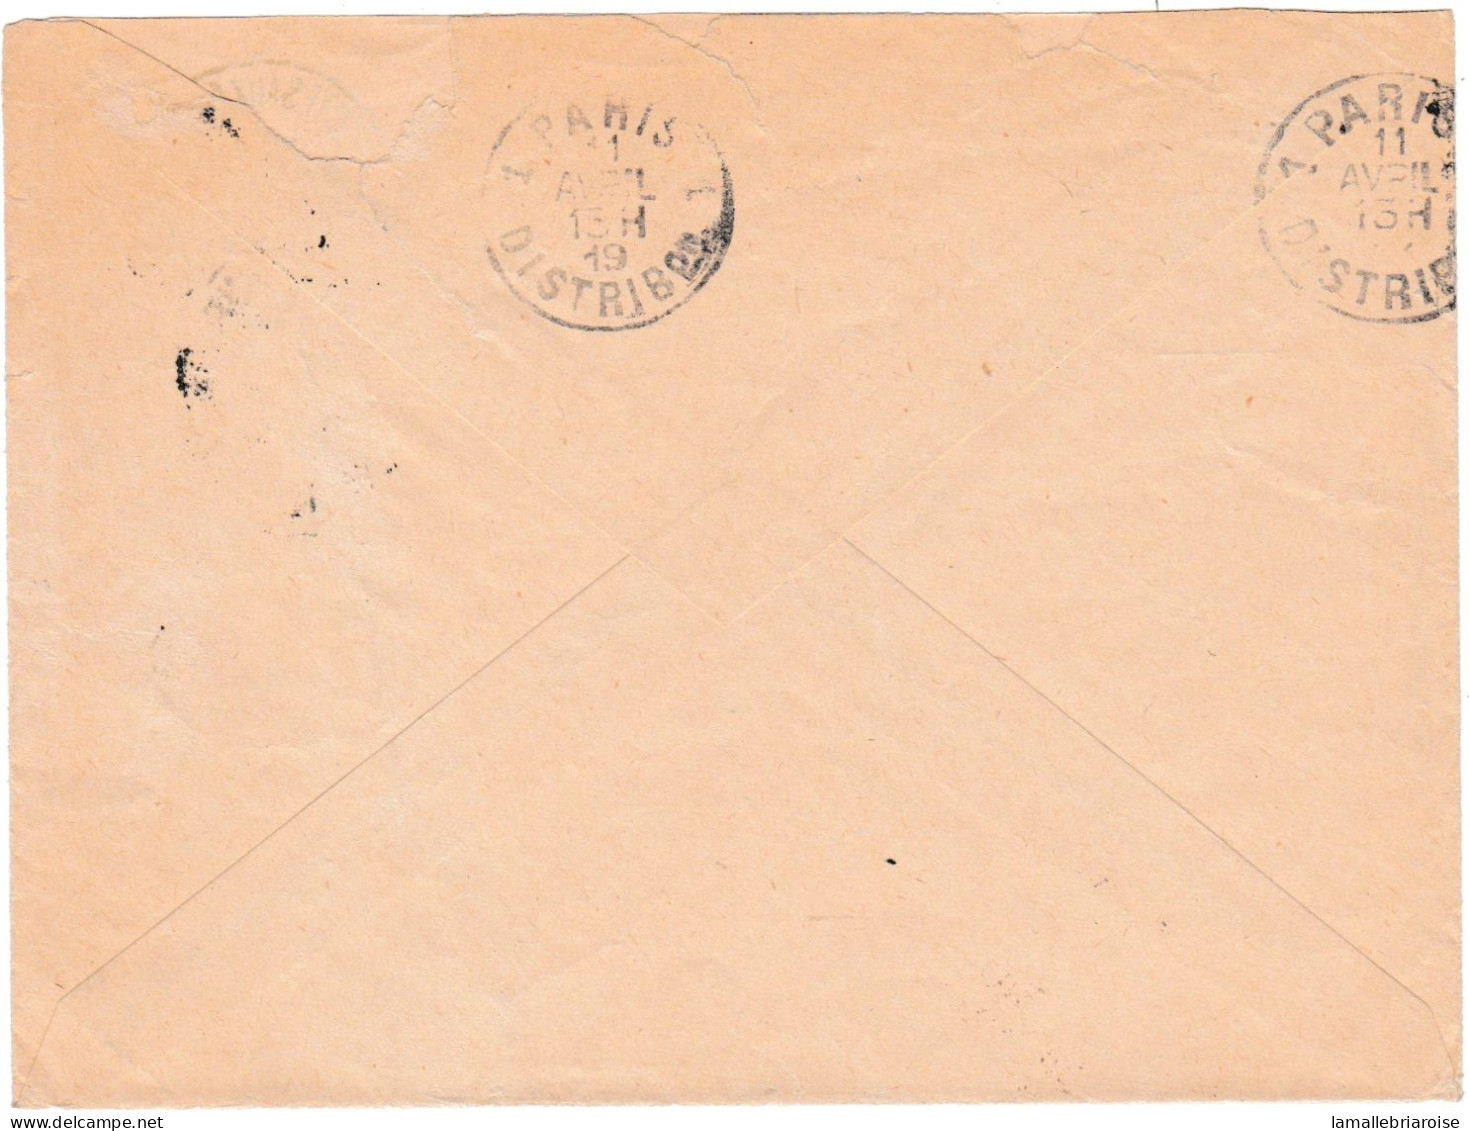 Lettre Avec Courrier (texte Interressant) Avec Cachet: Troupes D'occupation Du Maroc Occidental, Casablanca - Guerre De 1914-18